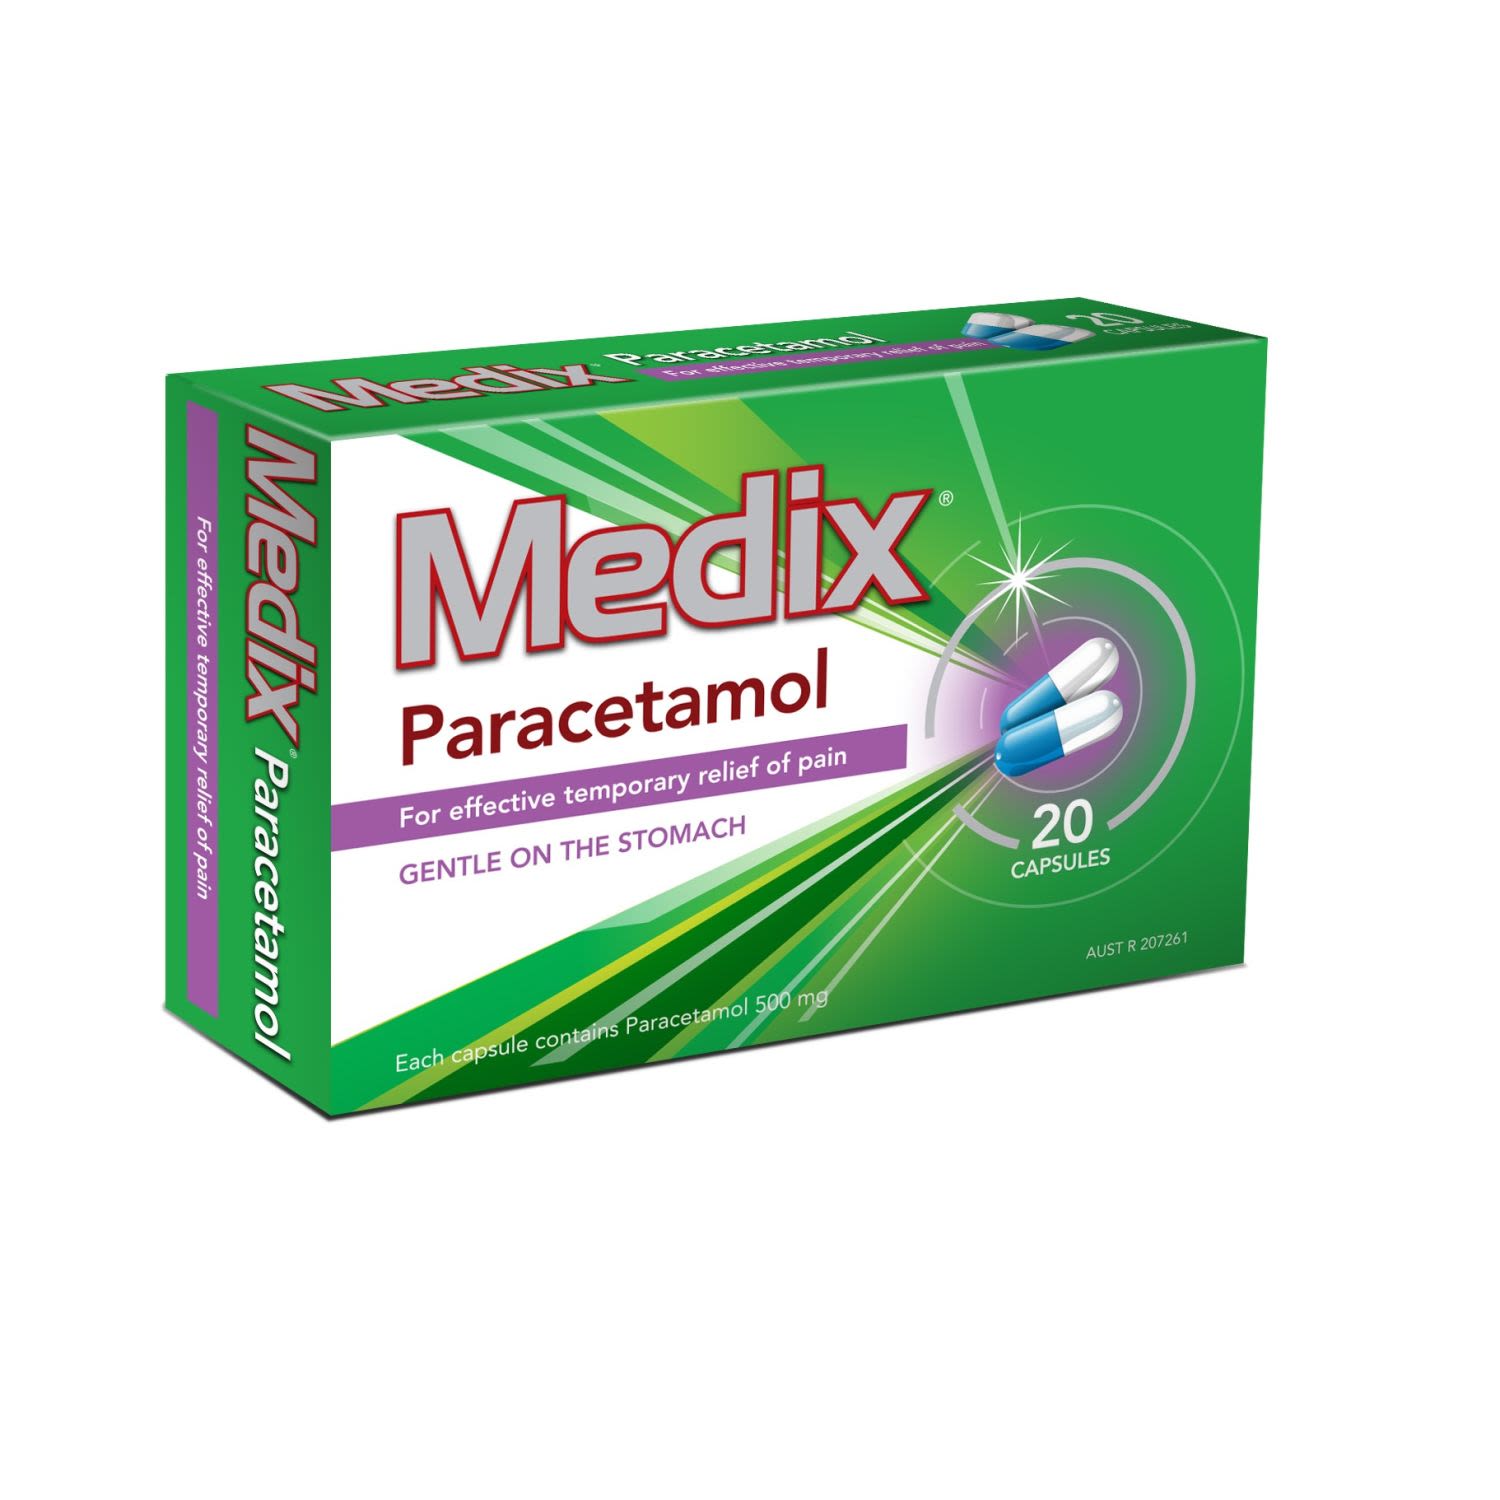 Medix Paracetamol Capsules, 20 Each